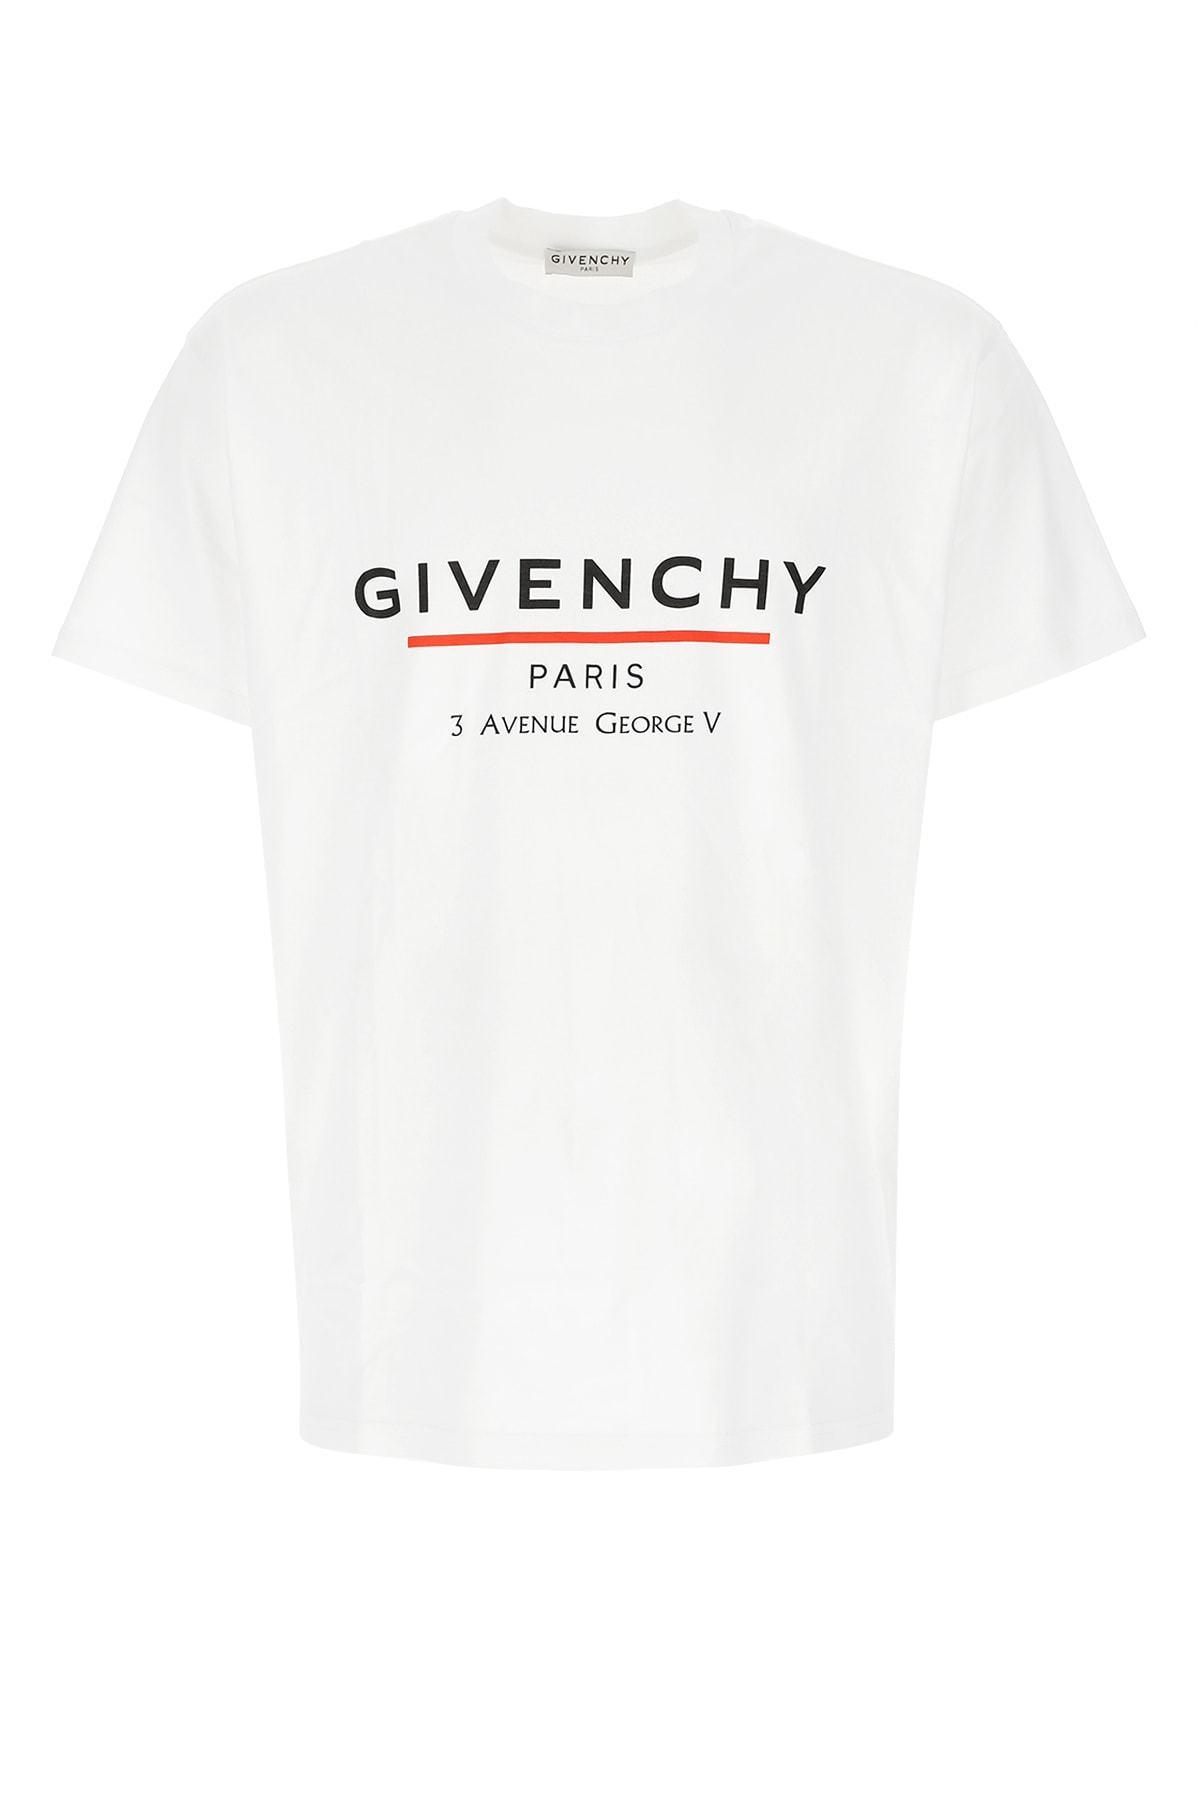 Givenchy Paris '3 Av George V' Logo T-shirt in White for Men | Lyst Canada